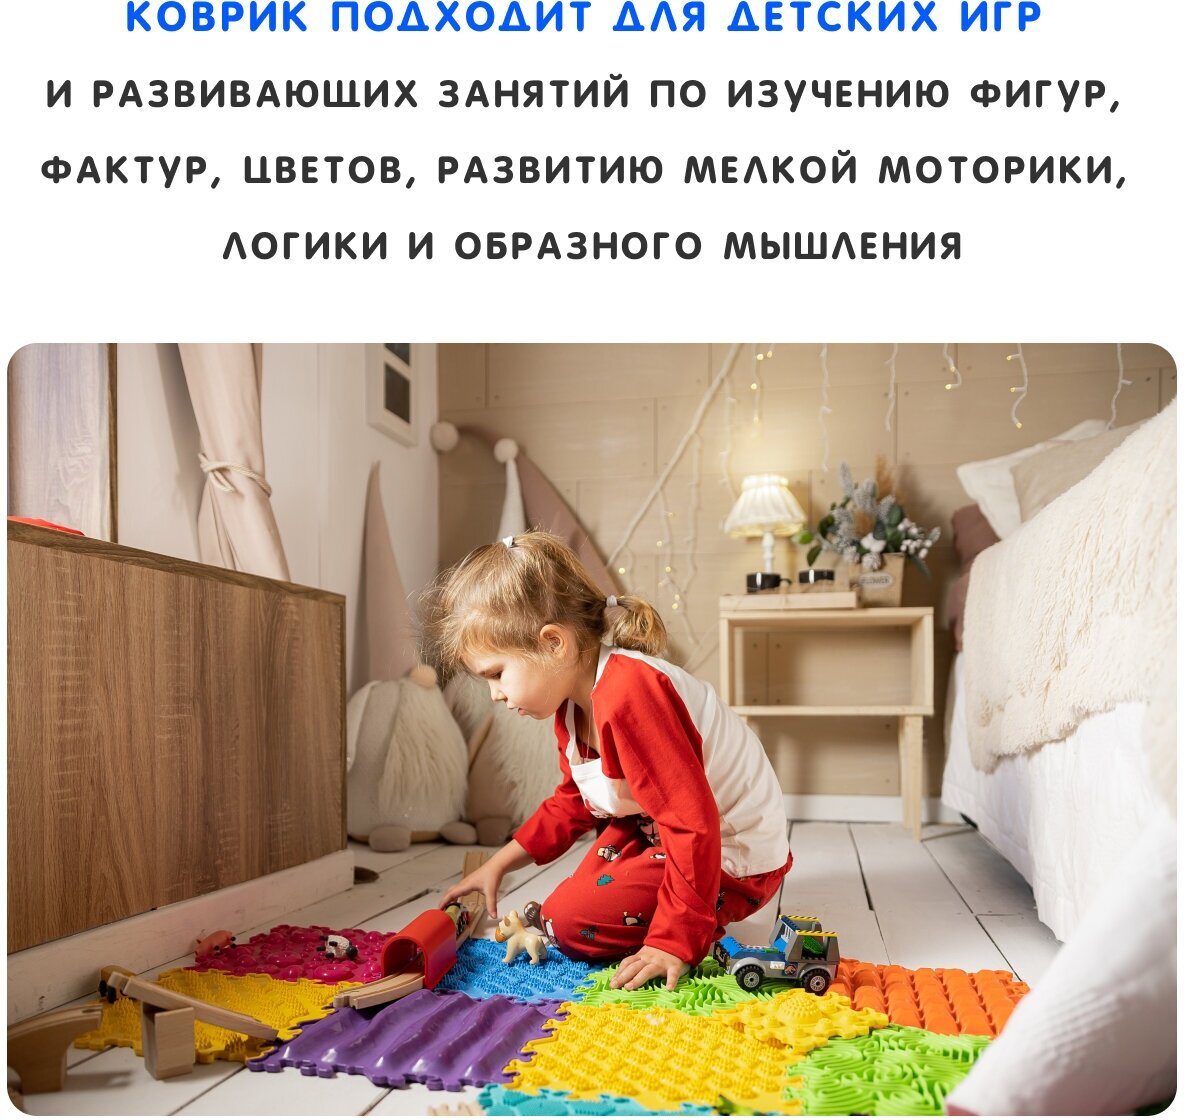 Ортопедический массажный коврик пазл для ног, спины на пол, для детей и взрослых, разноцветный, 16 пазлов - фотография № 11